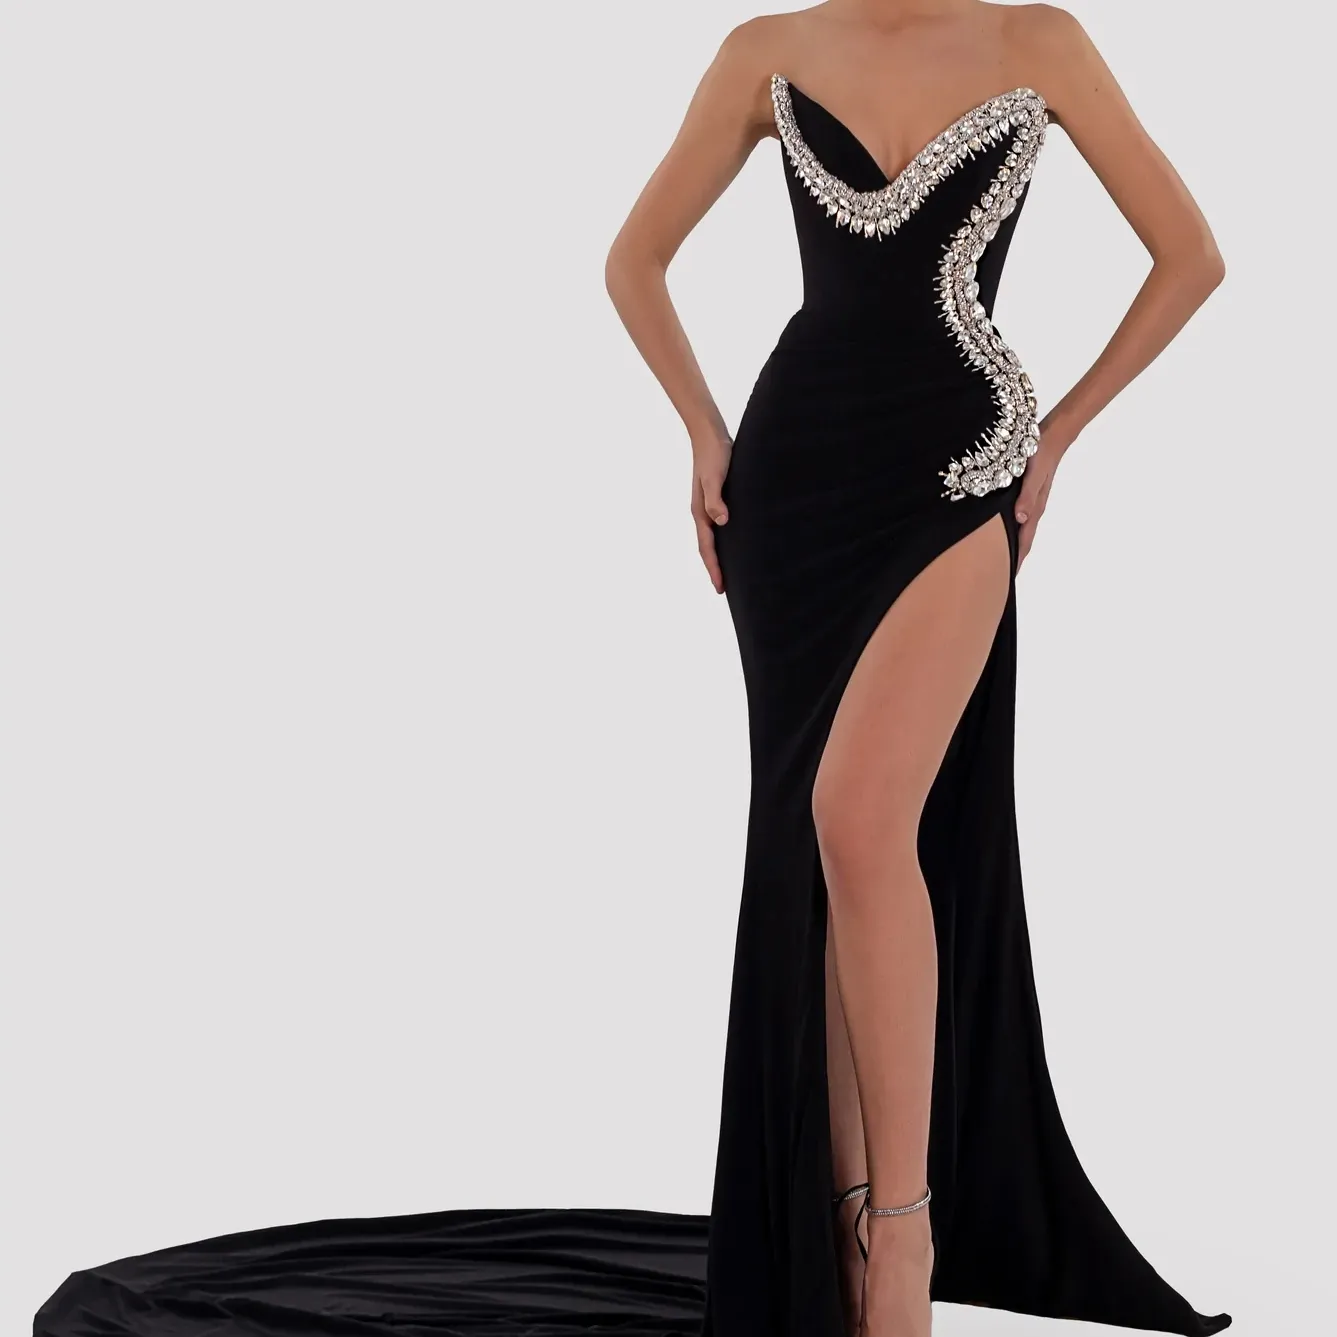 Gaun malam wanita ED2402, Gaun malam hitam berlian belahan tinggi, gaun Maxi pesta dansa untuk wanita